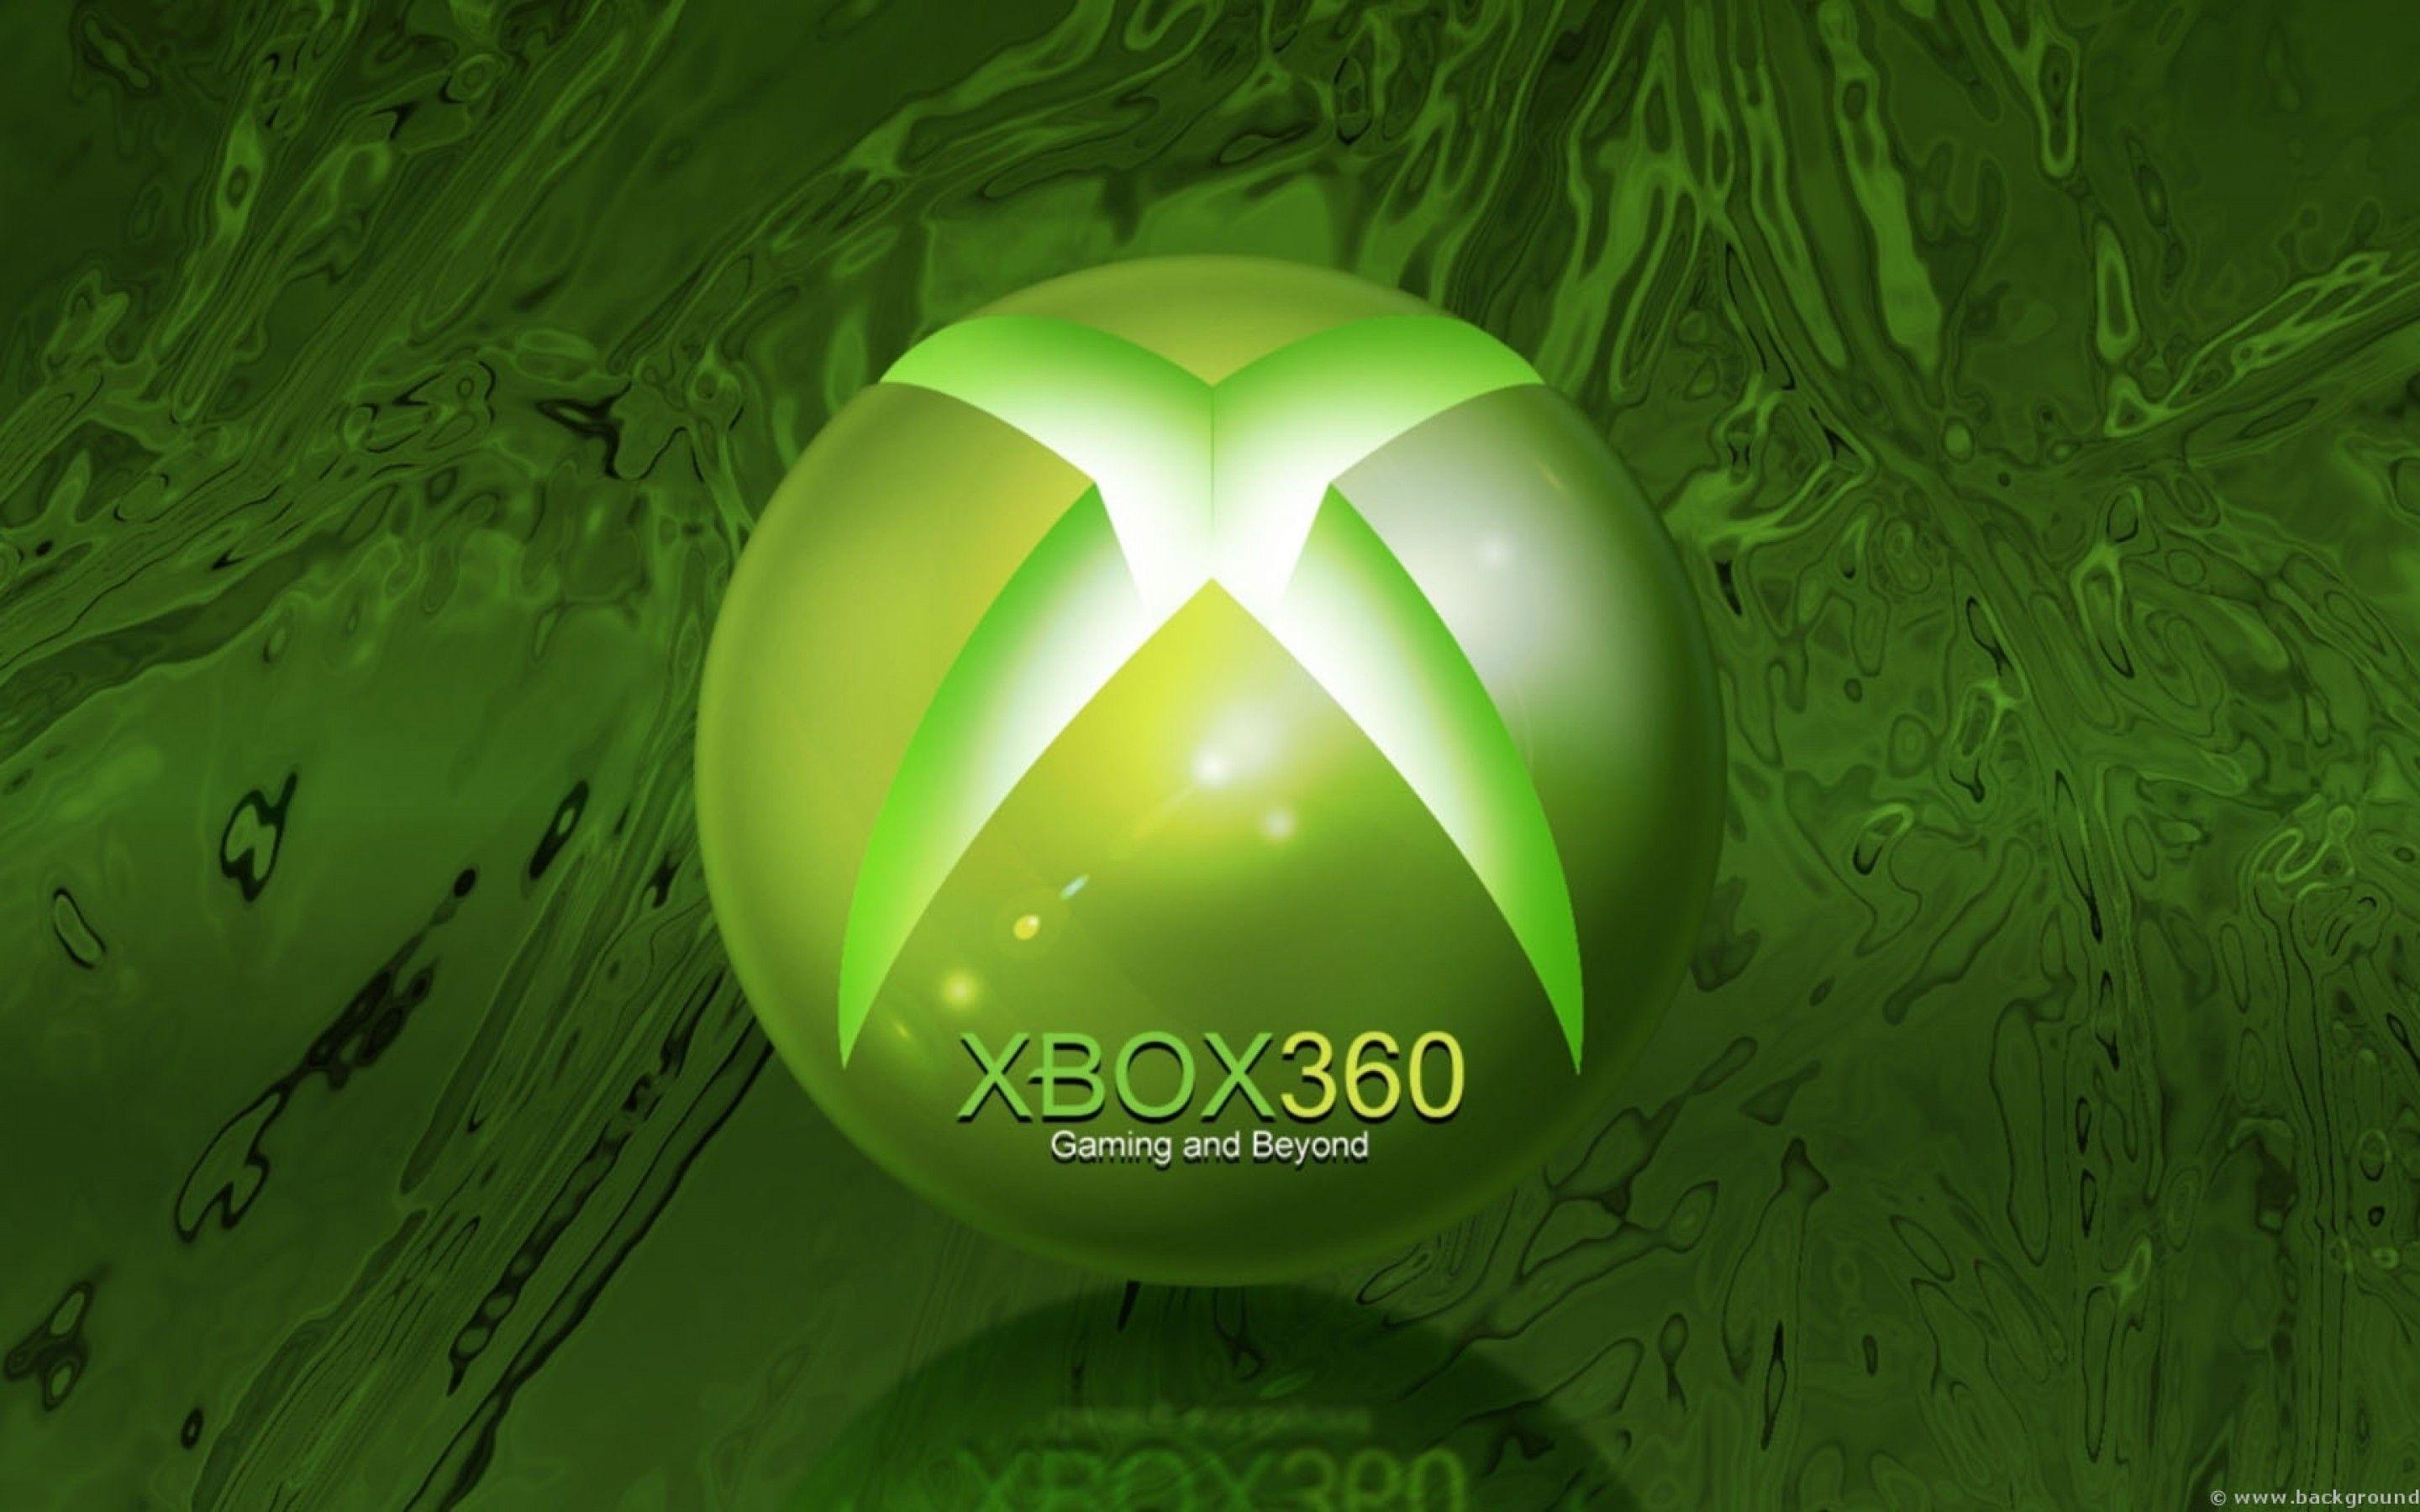 Nếu bạn đang tìm kiếm các hình nền Xbox 360 đẹp mắt và sáng tạo, thì đừng bỏ lỡ cơ hội xem những hình ảnh liên quan đến chủ đề này. Bạn sẽ có nhiều sự lựa chọn đa dạng và phong phú.